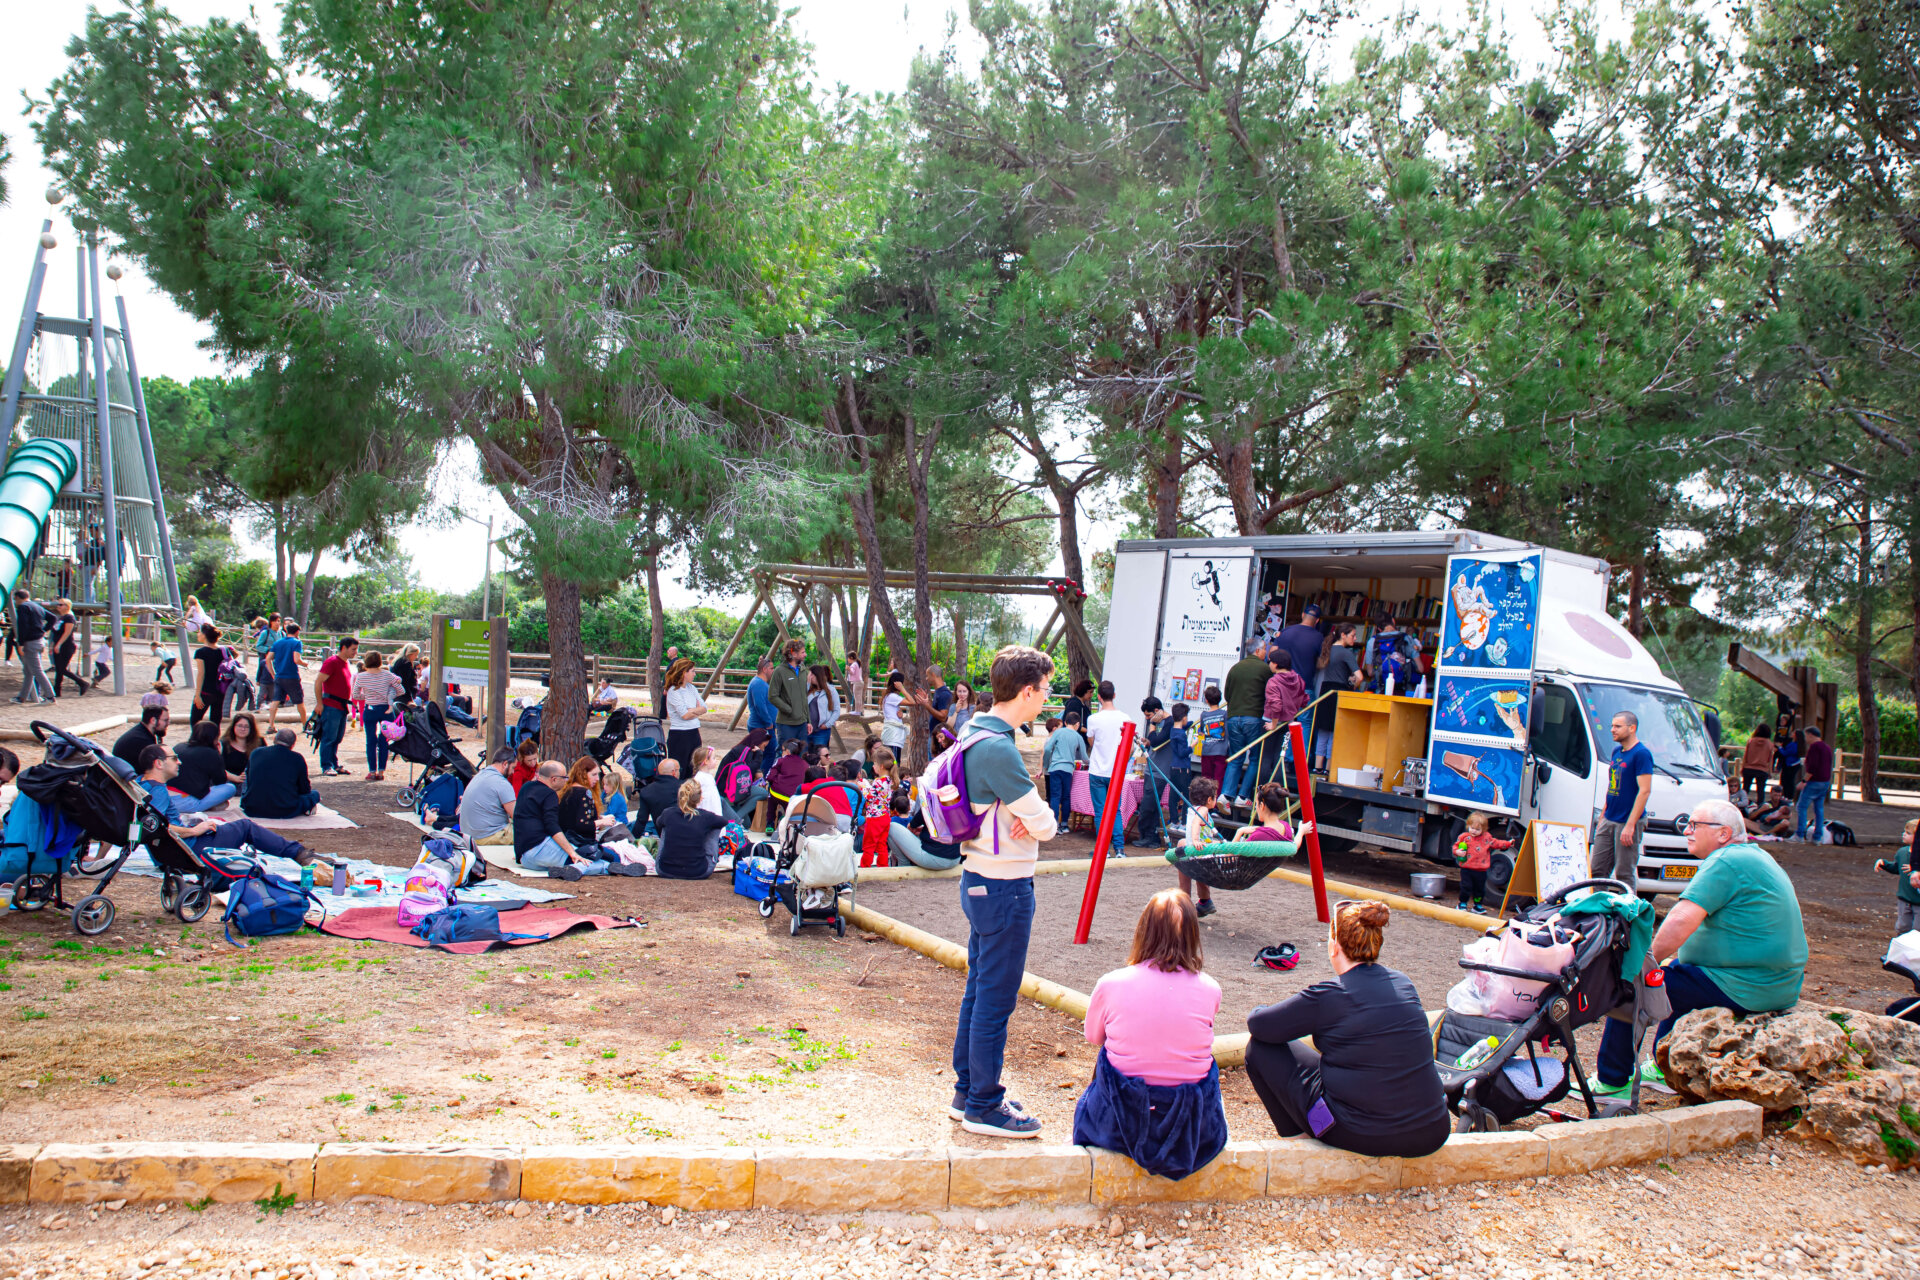 משאית ספרים בגן משחקים עם קהל משפחות מסביב